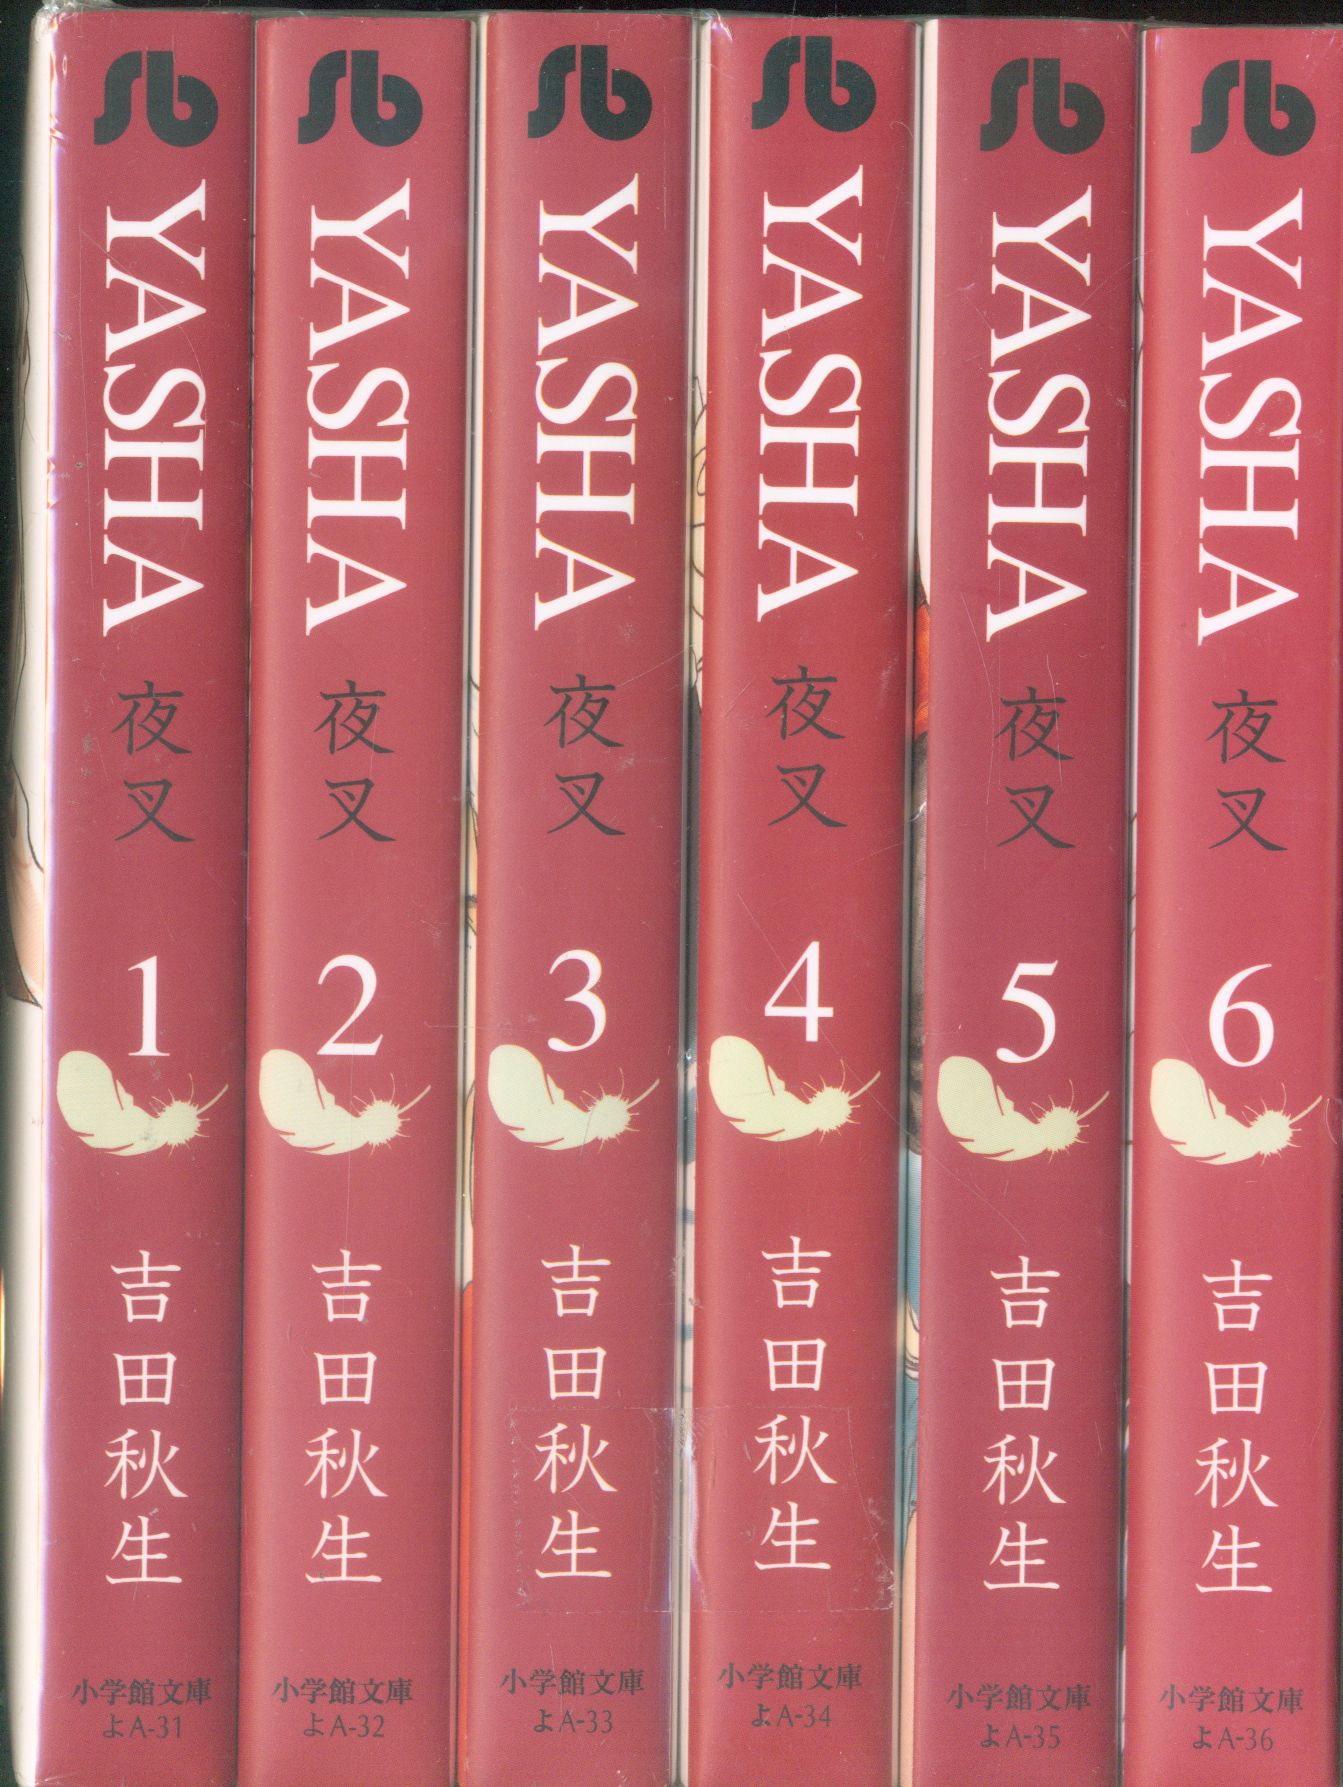 Shogakukan Shogakukan Bunko Akimi Yoshida Yasha Paperback Version Complete 6 Volume Set Mandarake Online Shop